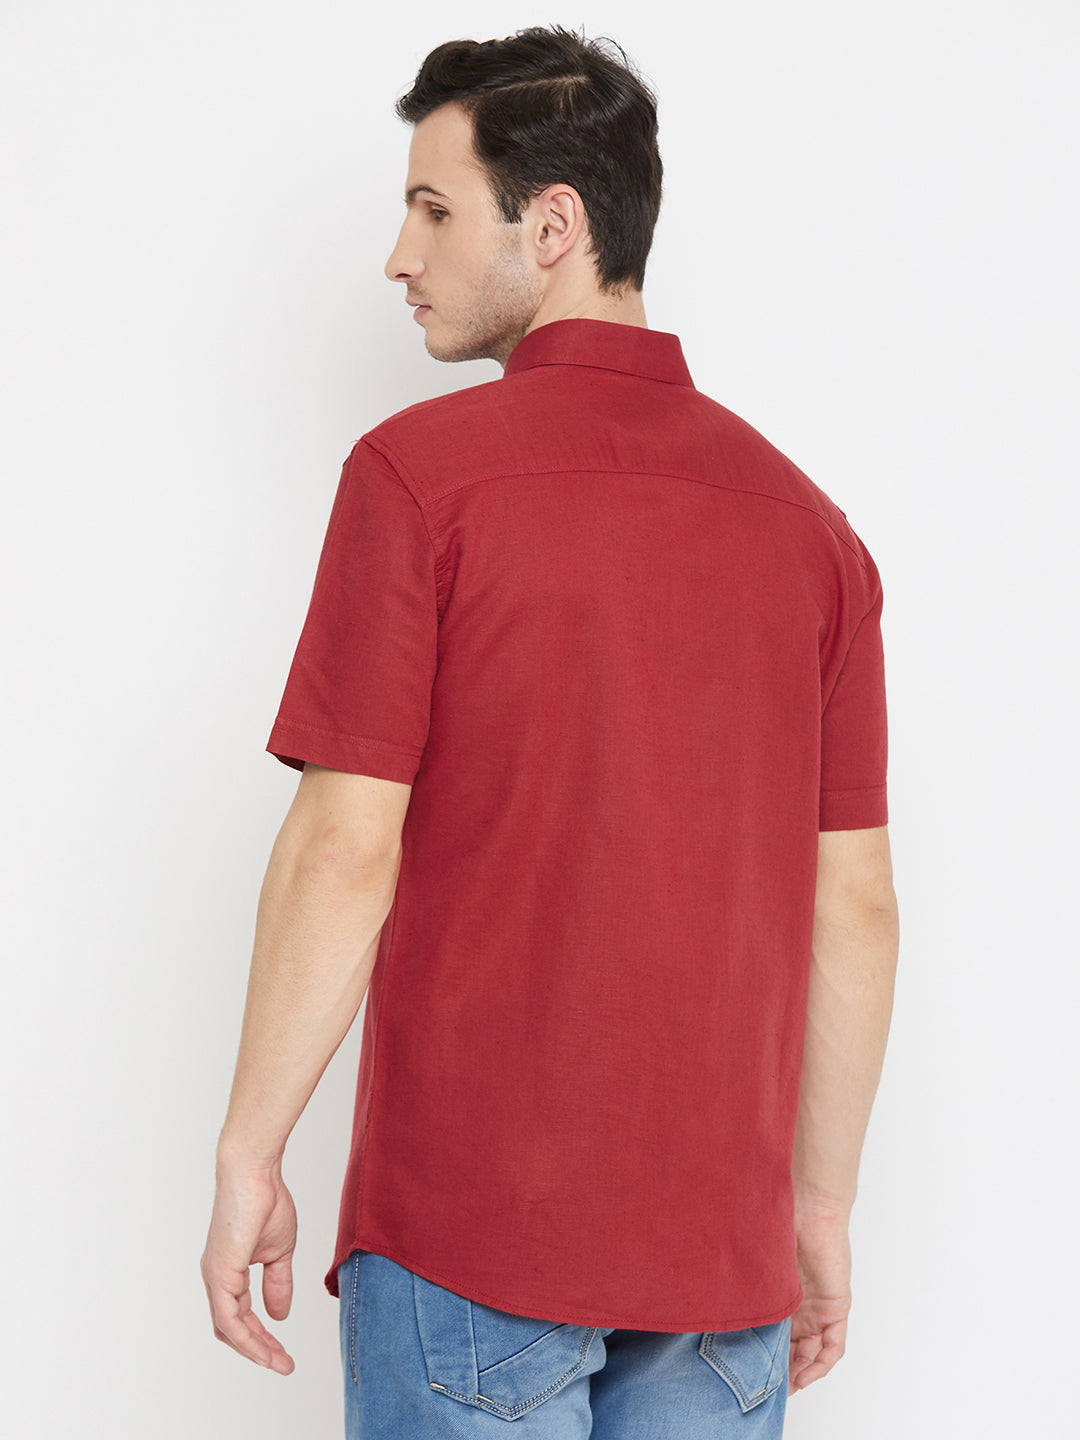 Red 100% Linen shirt - Men Shirts